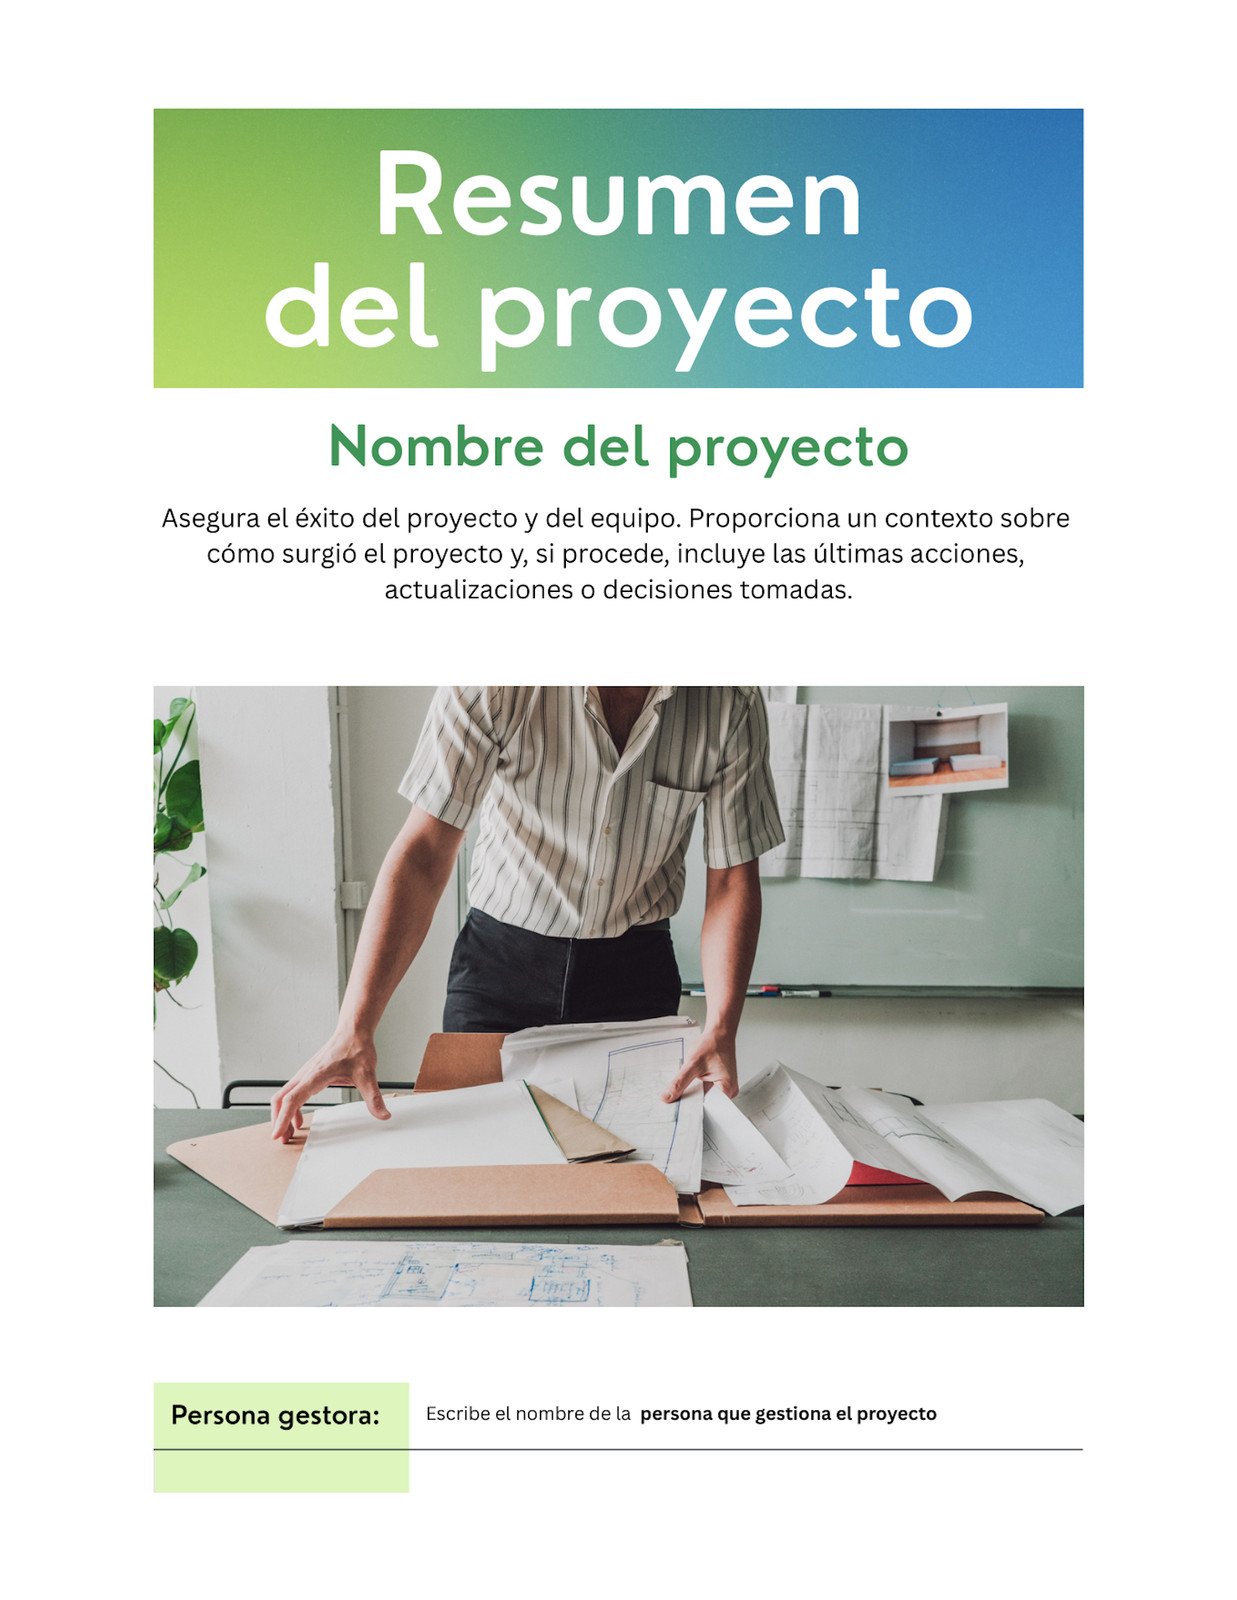 Doc Resumen del Proyecto Estilo Profesional Vibrante en Verde Claro Azul